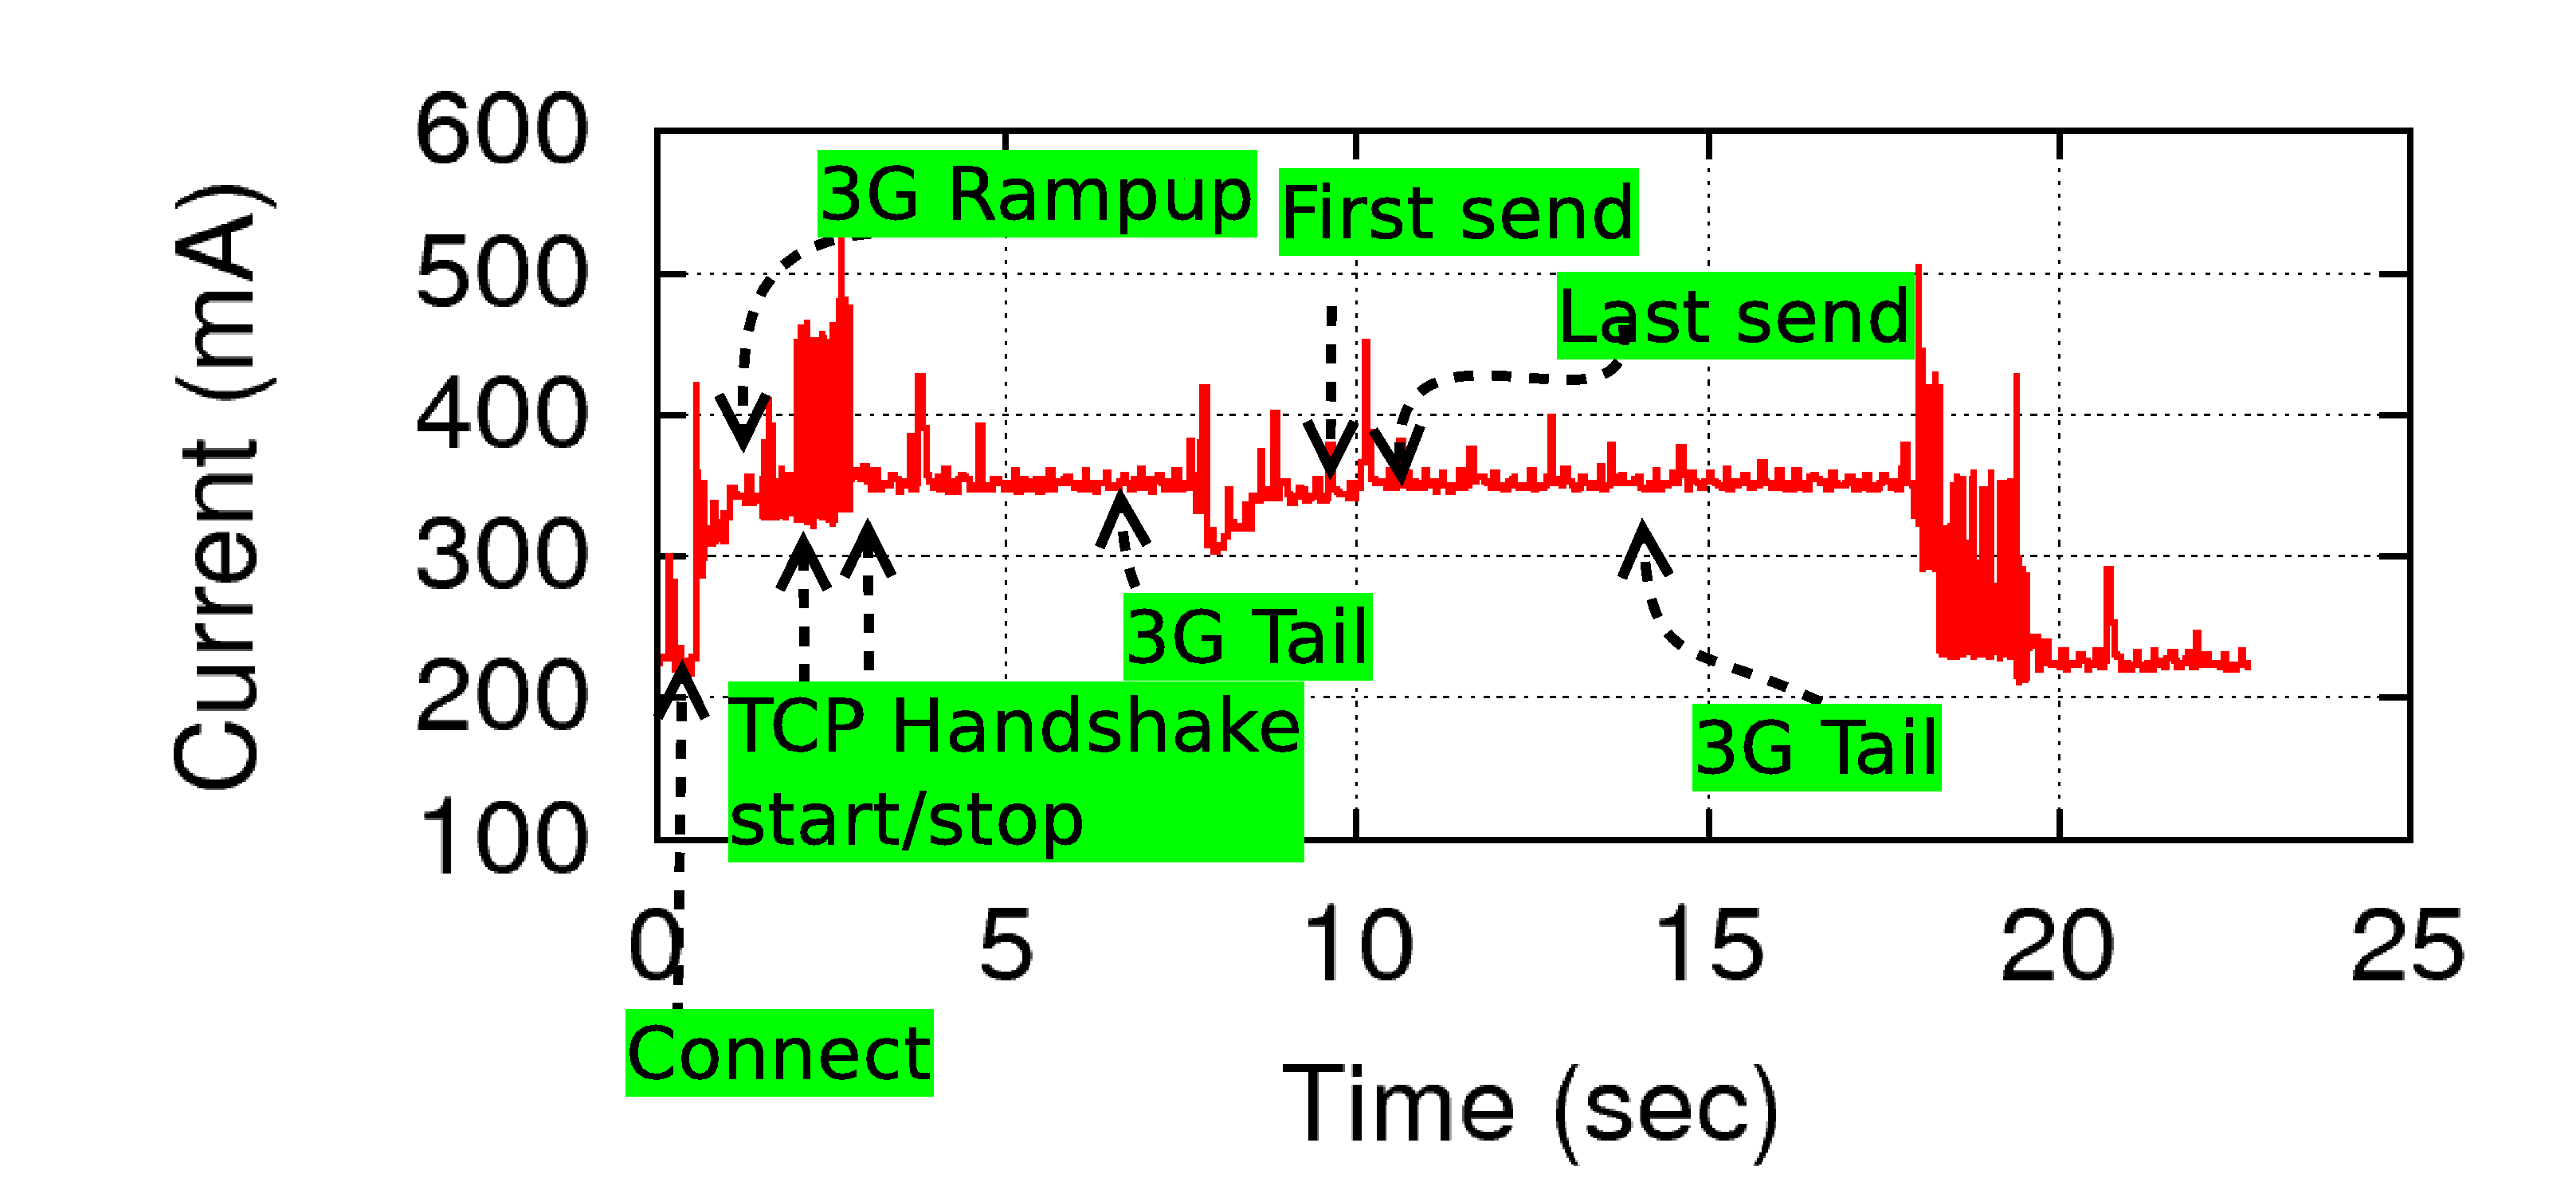 Abbildung 2: Stromverbrauch eines Mobiltelefons beim Senden von 5 Dateneinheiten zu je 10 kb über das Mobilfunknetz (3G) mit den Sendebefehlen direkt nach dem Verbindungsaufbau.